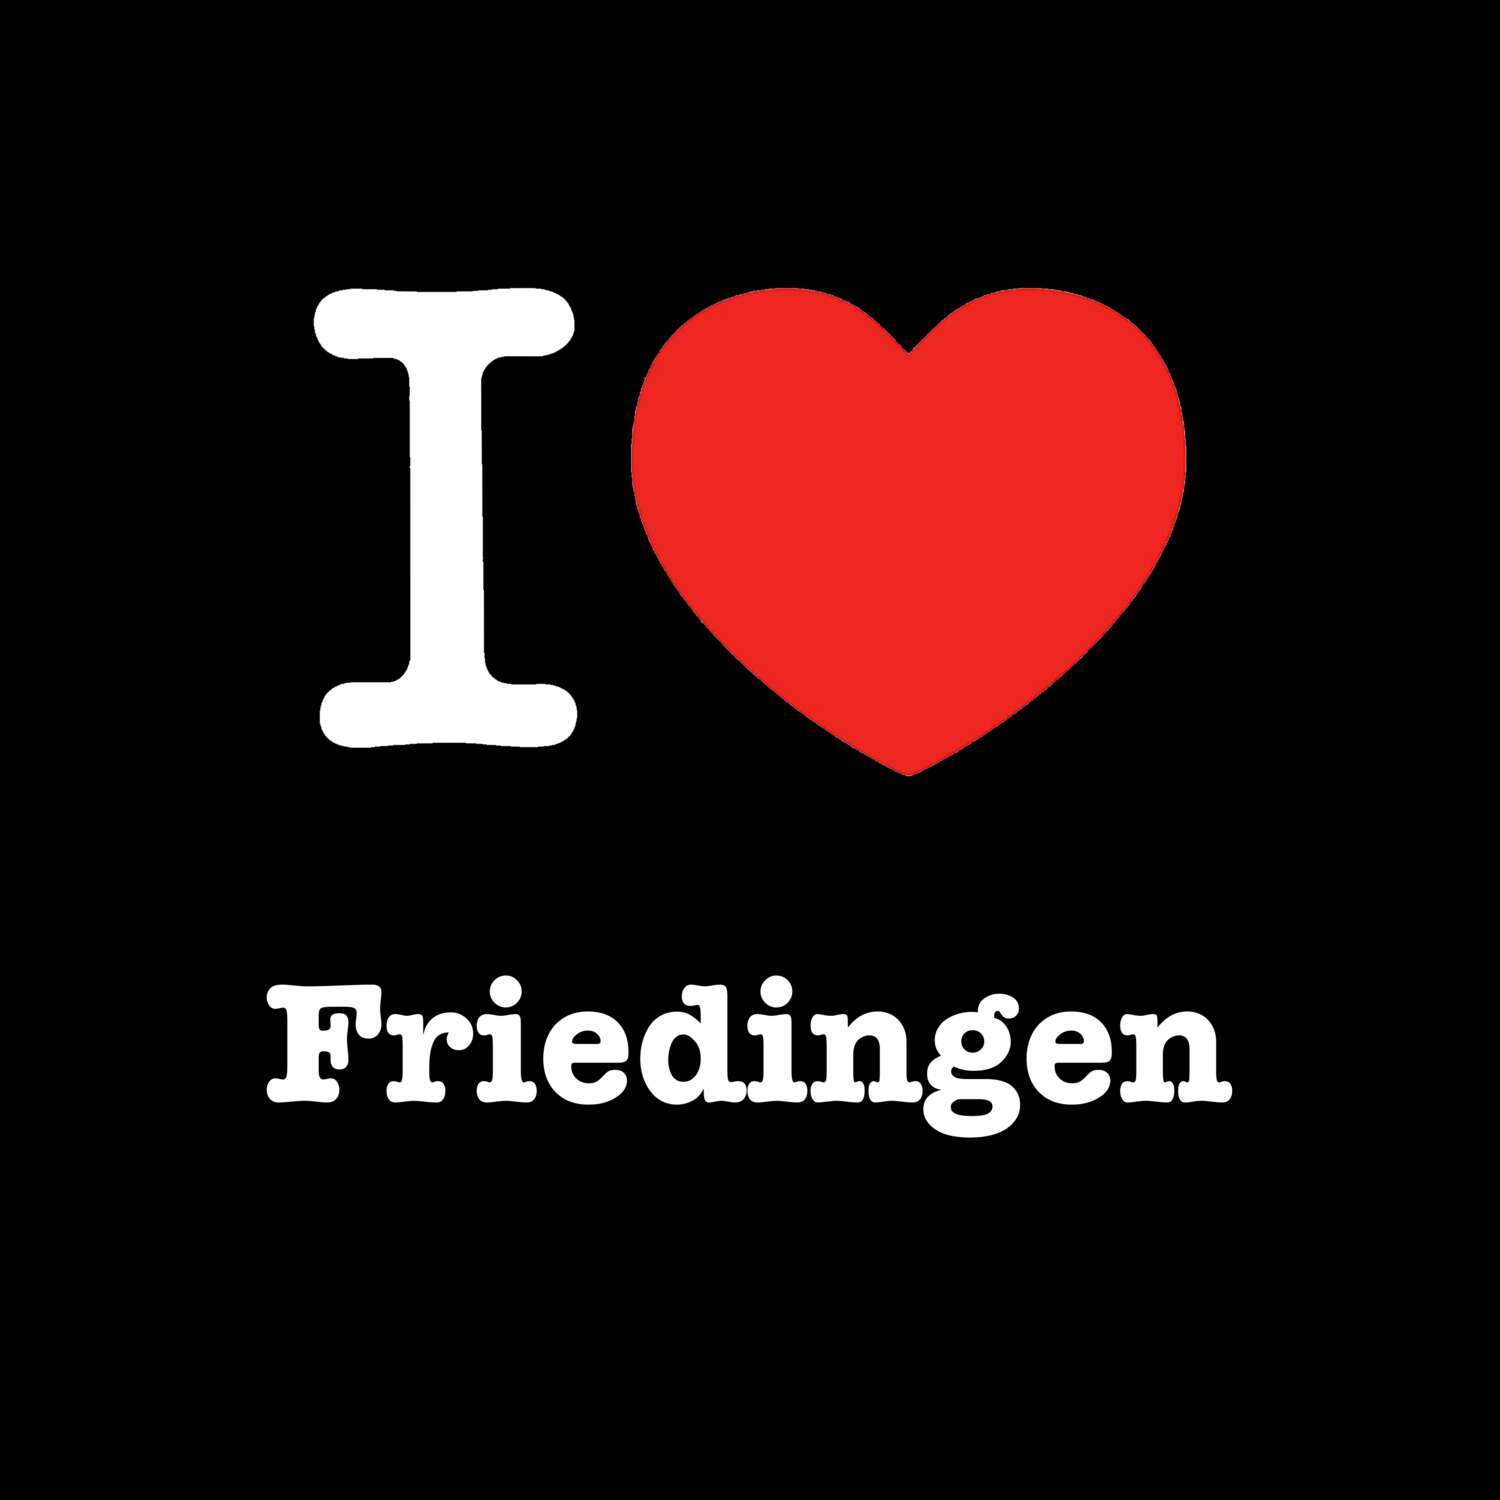 Friedingen T-Shirt »I love«